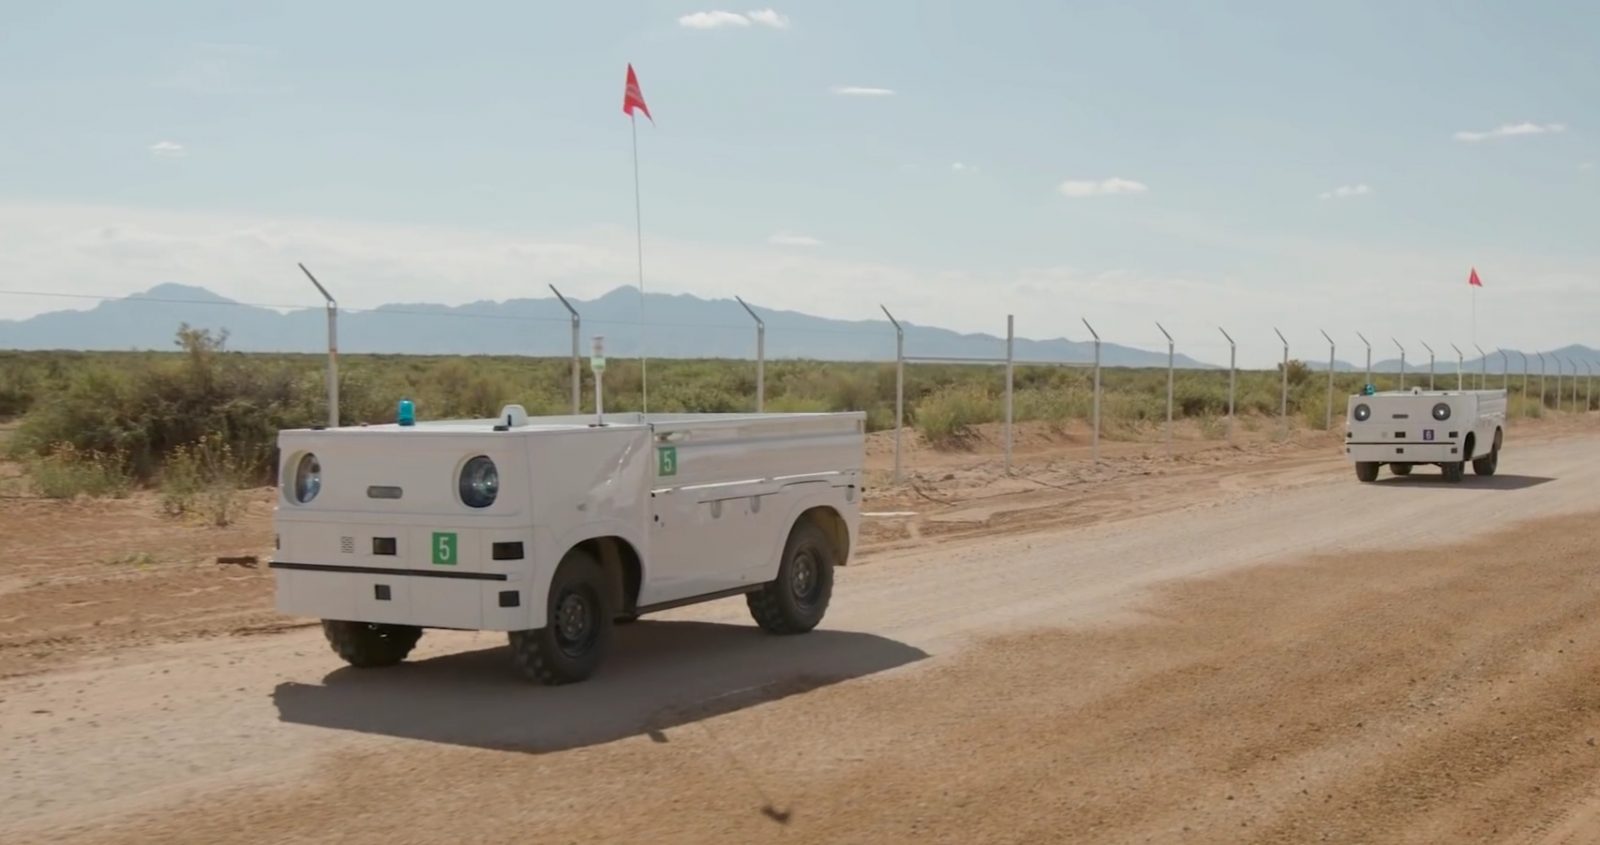 A Honda önvezető szállítójármű flottát tesztel Új-Mexikóban